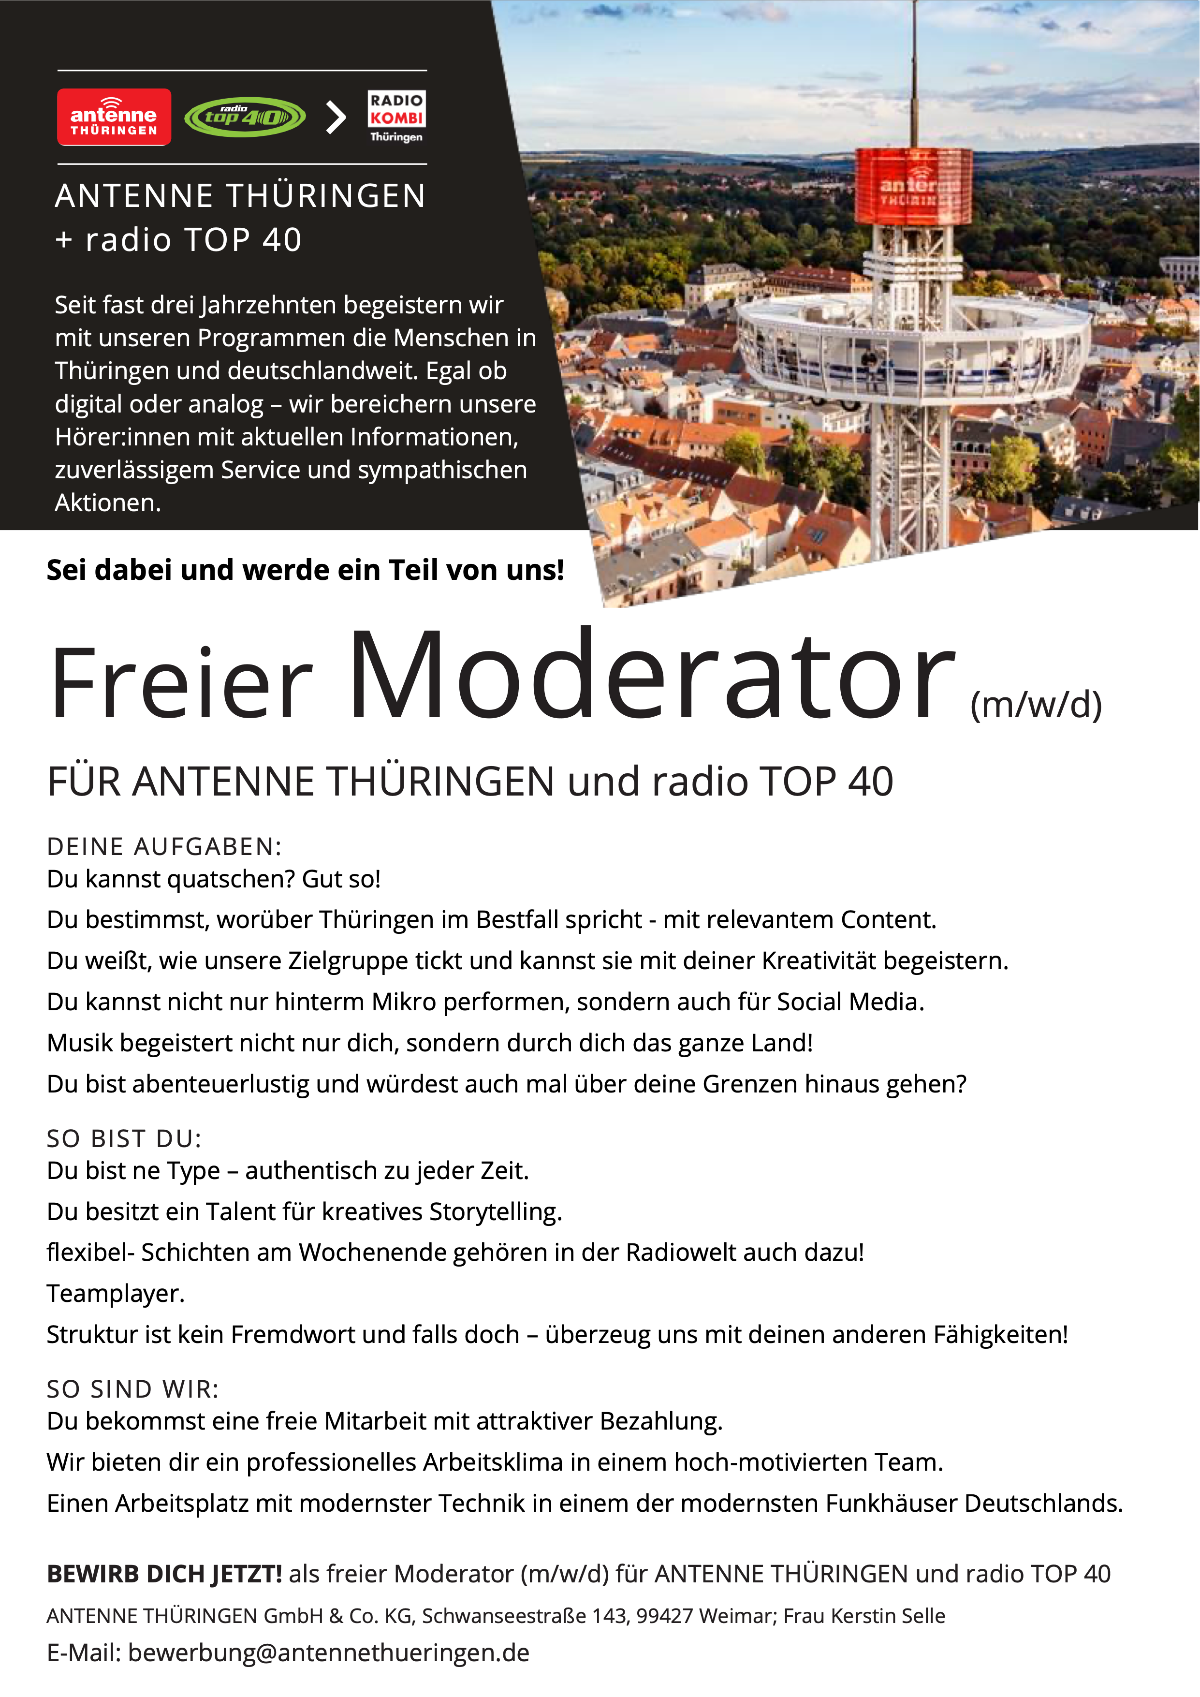 ANTENNE THÜRINGEN und radio TOP 40 suchen freien Moderator (m/w/d)